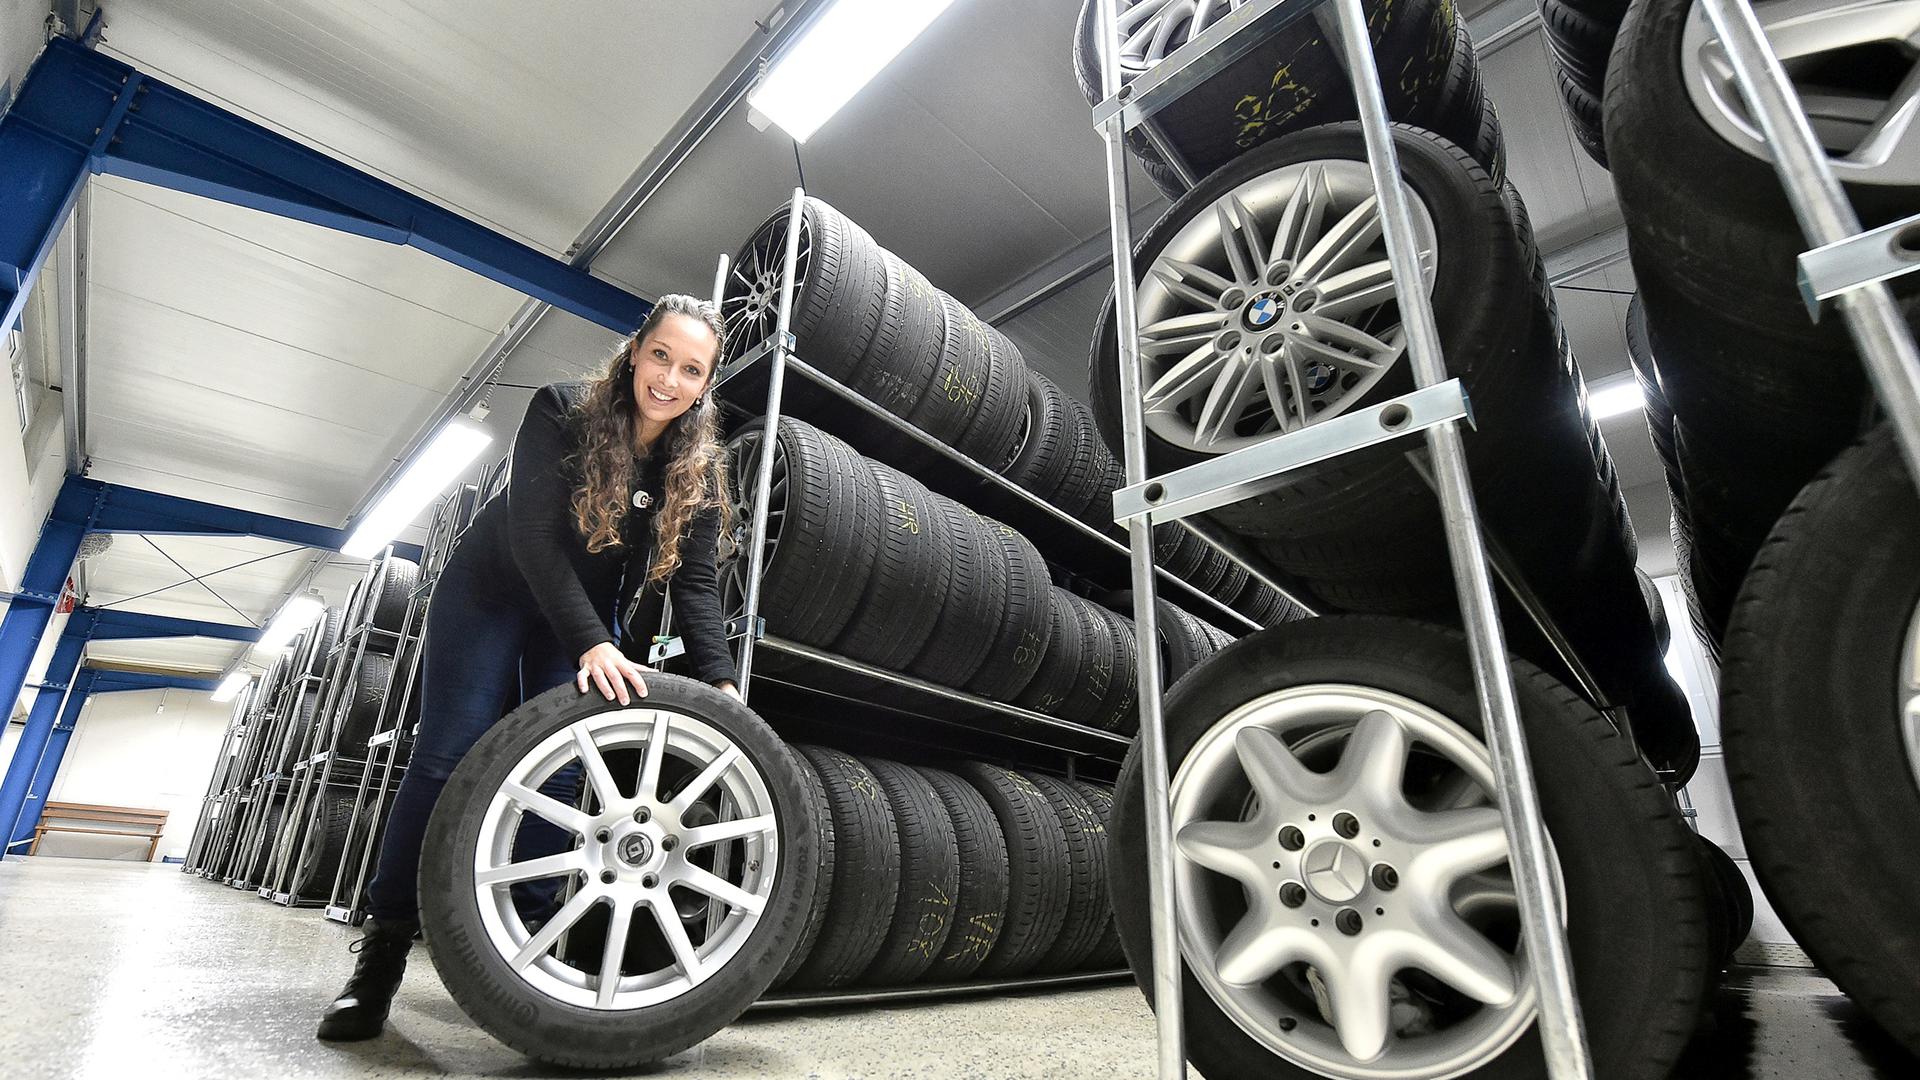 Laura Hechler aus Stutensee erklärt, dass beim Reifenwechsel das Gros der Kunden bis Ende Oktober oder Anfang November mit warten würden. 